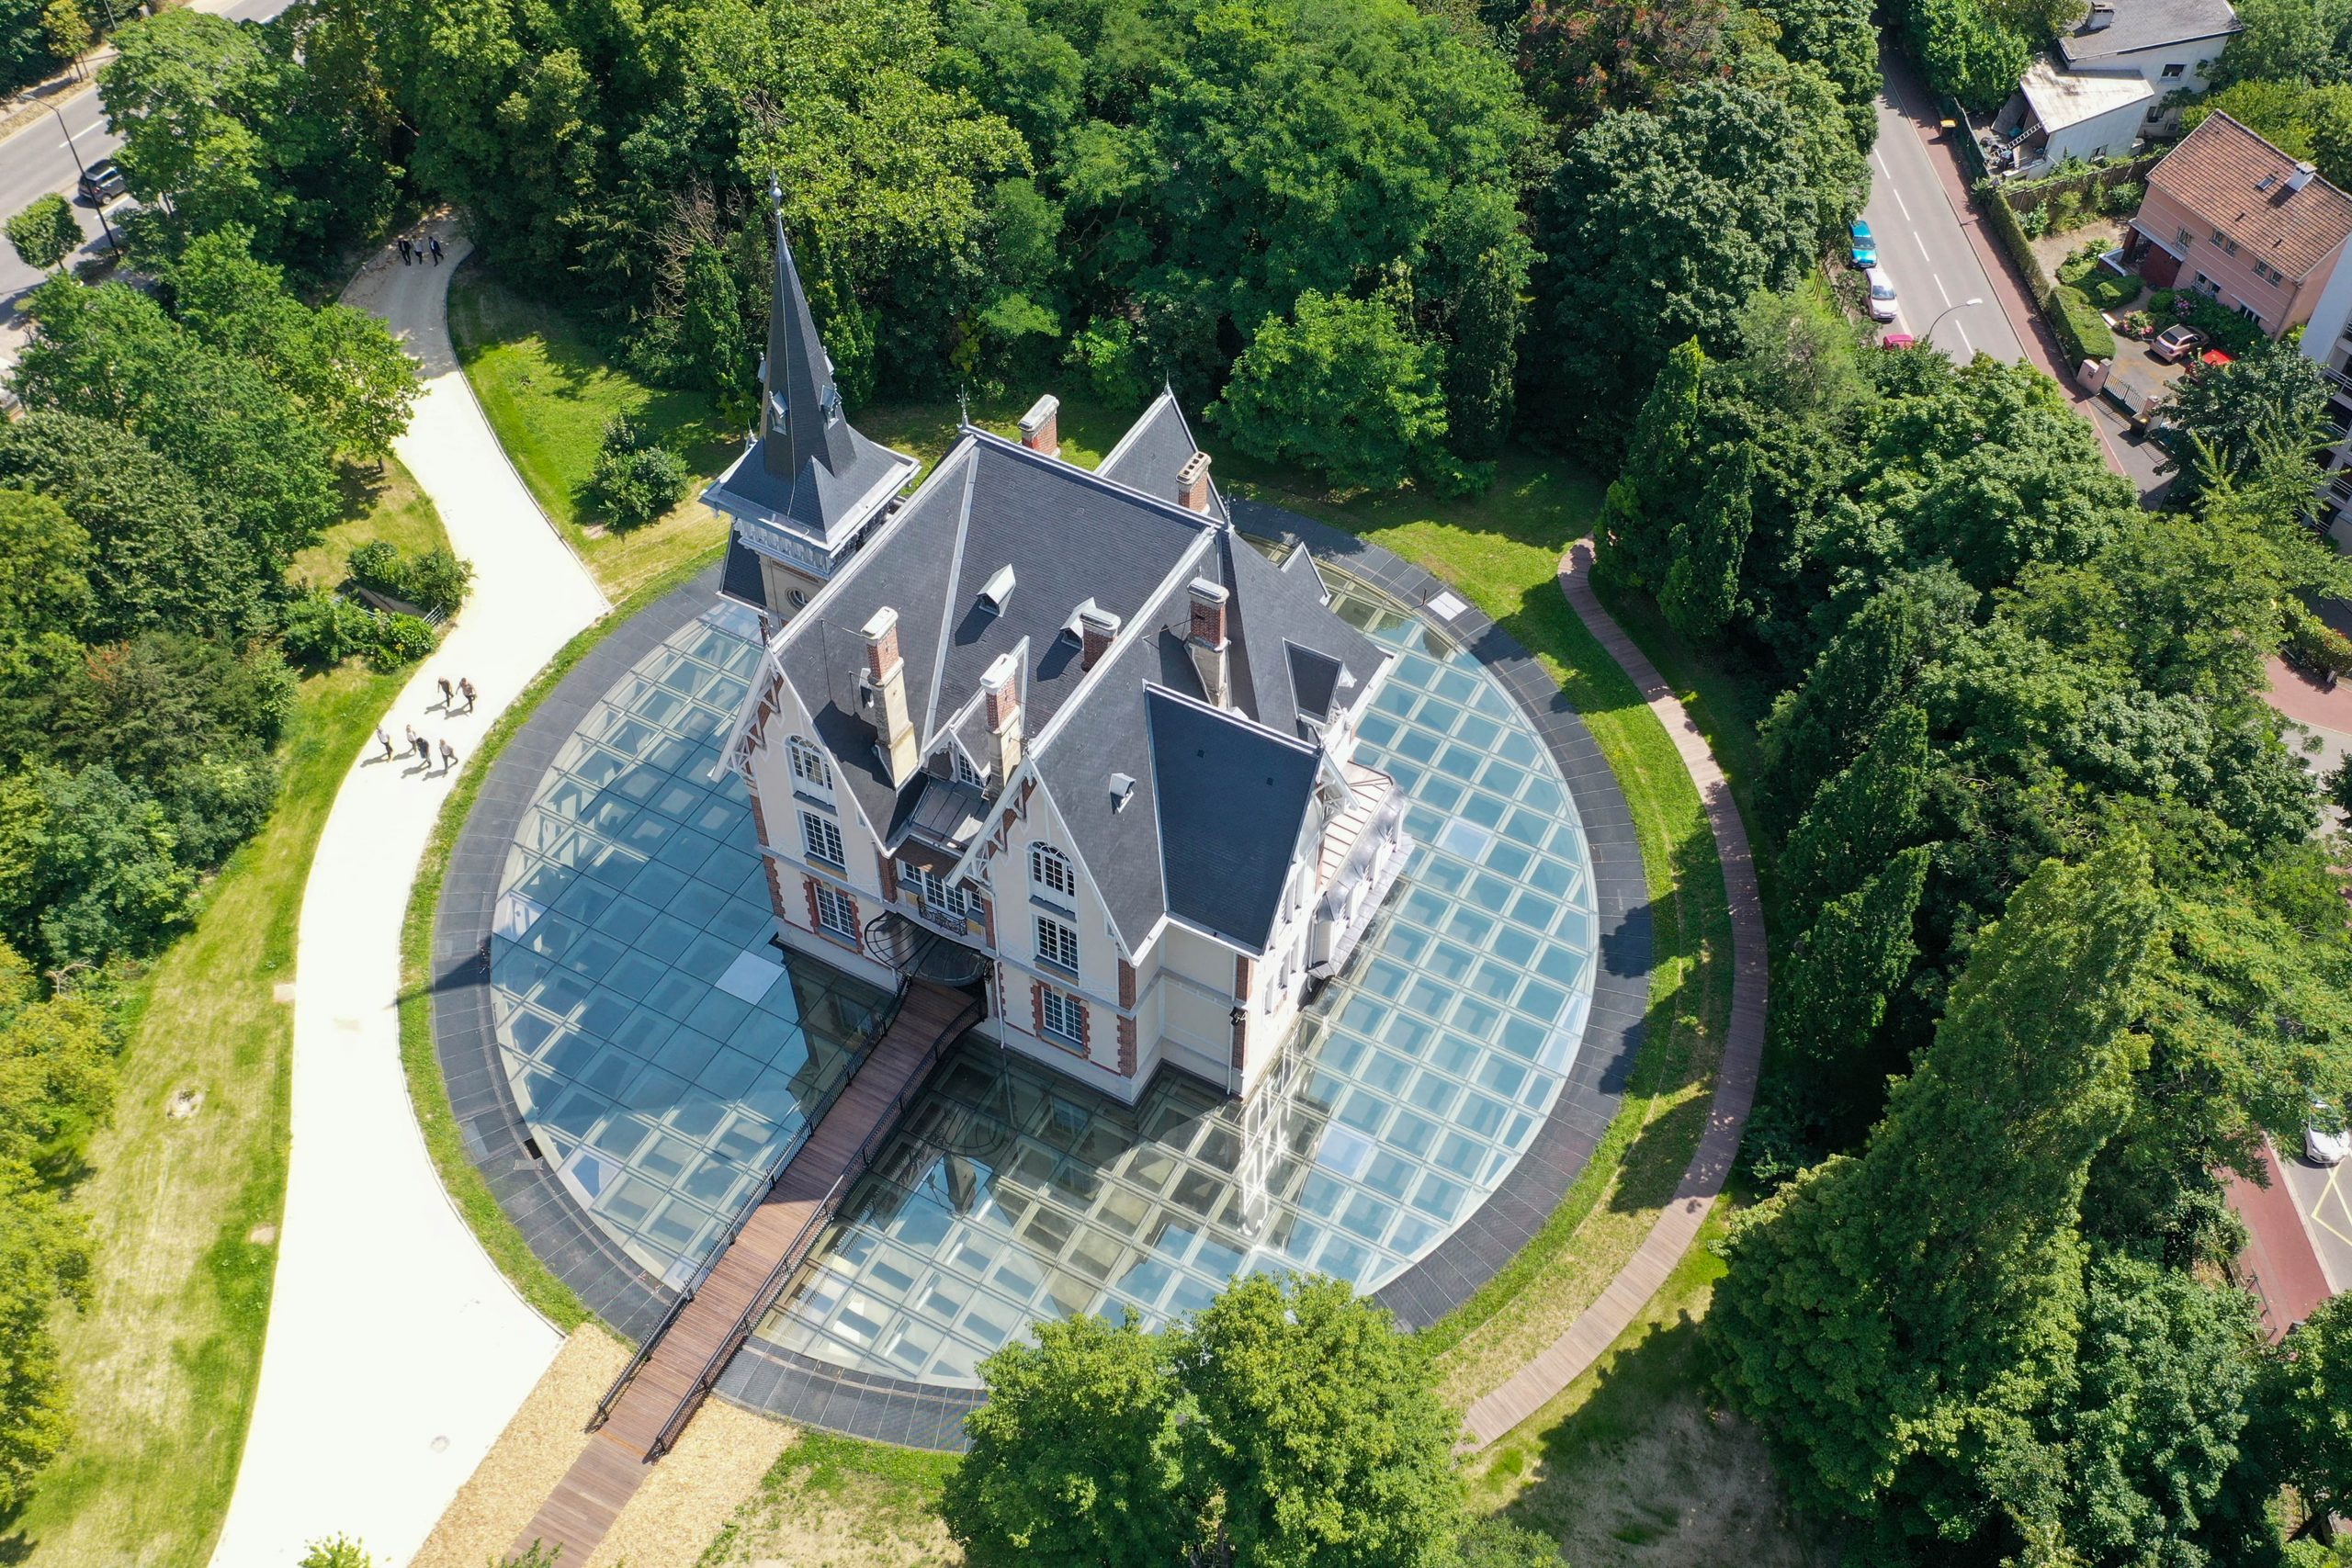 Vue aérienne du château avec sa galerie vitrée